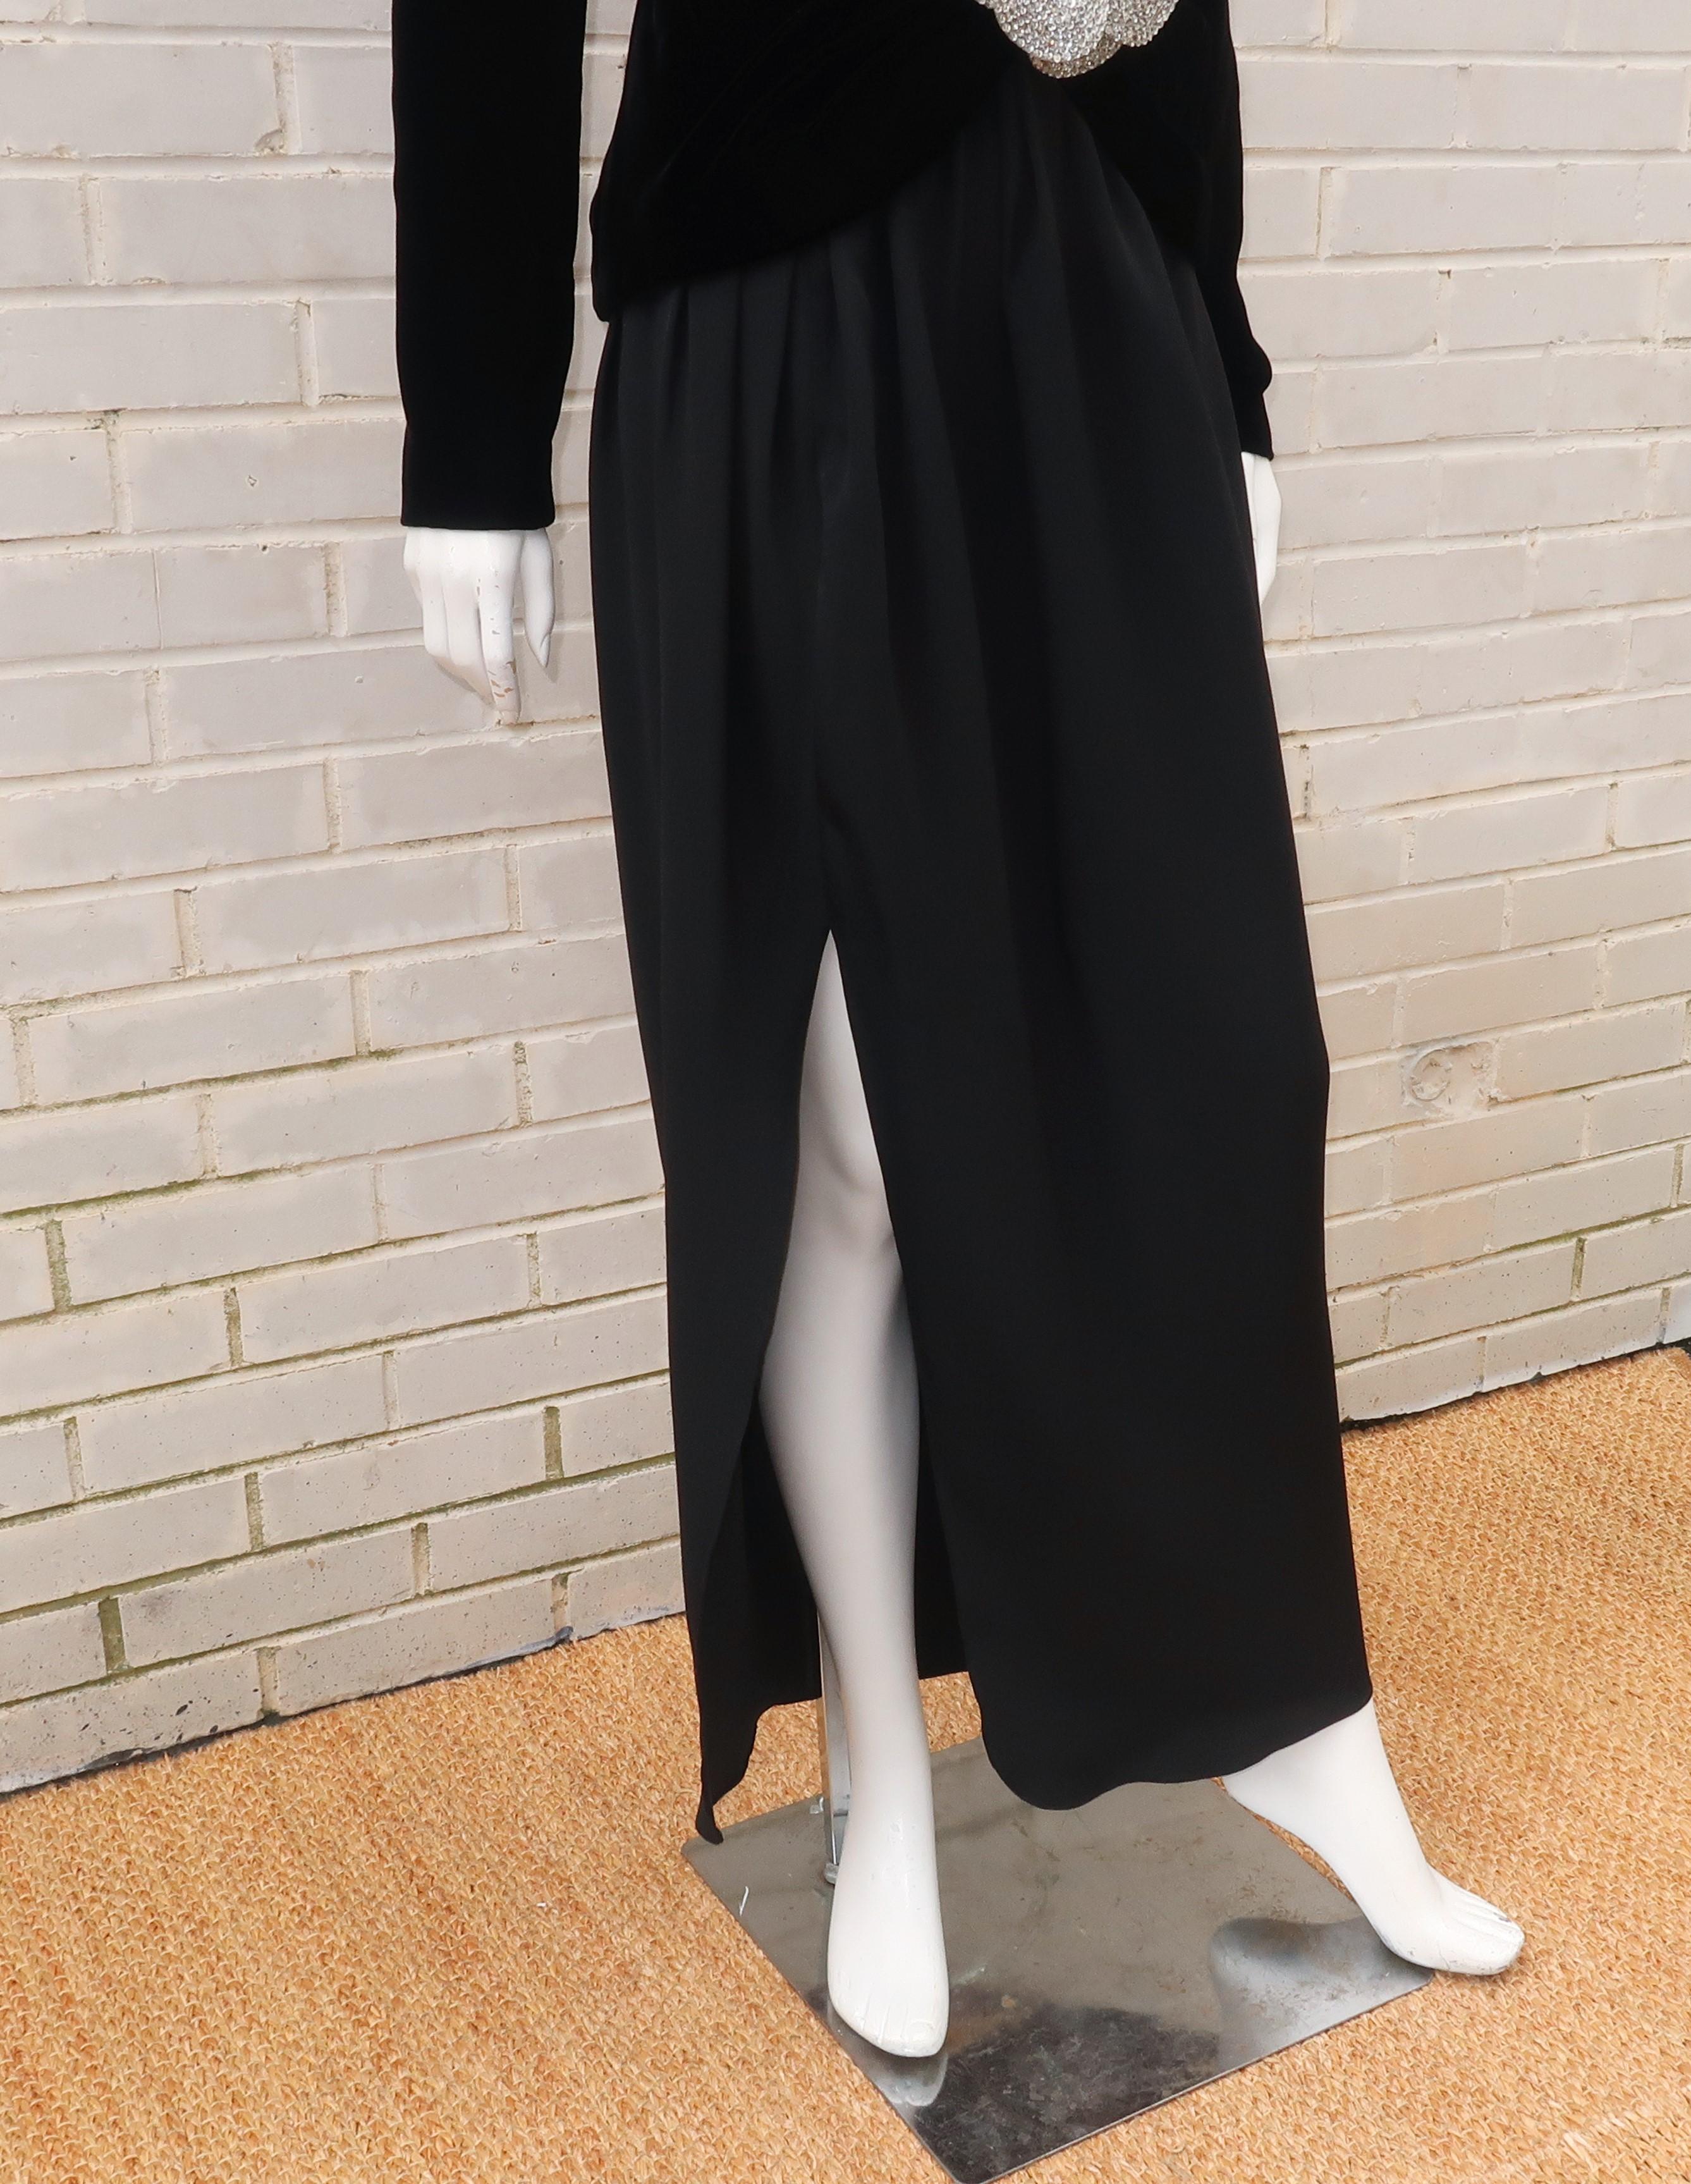 C.1990 Oscar de la Renta Black Velvet Two Piece Dress With Silver Sequins 1